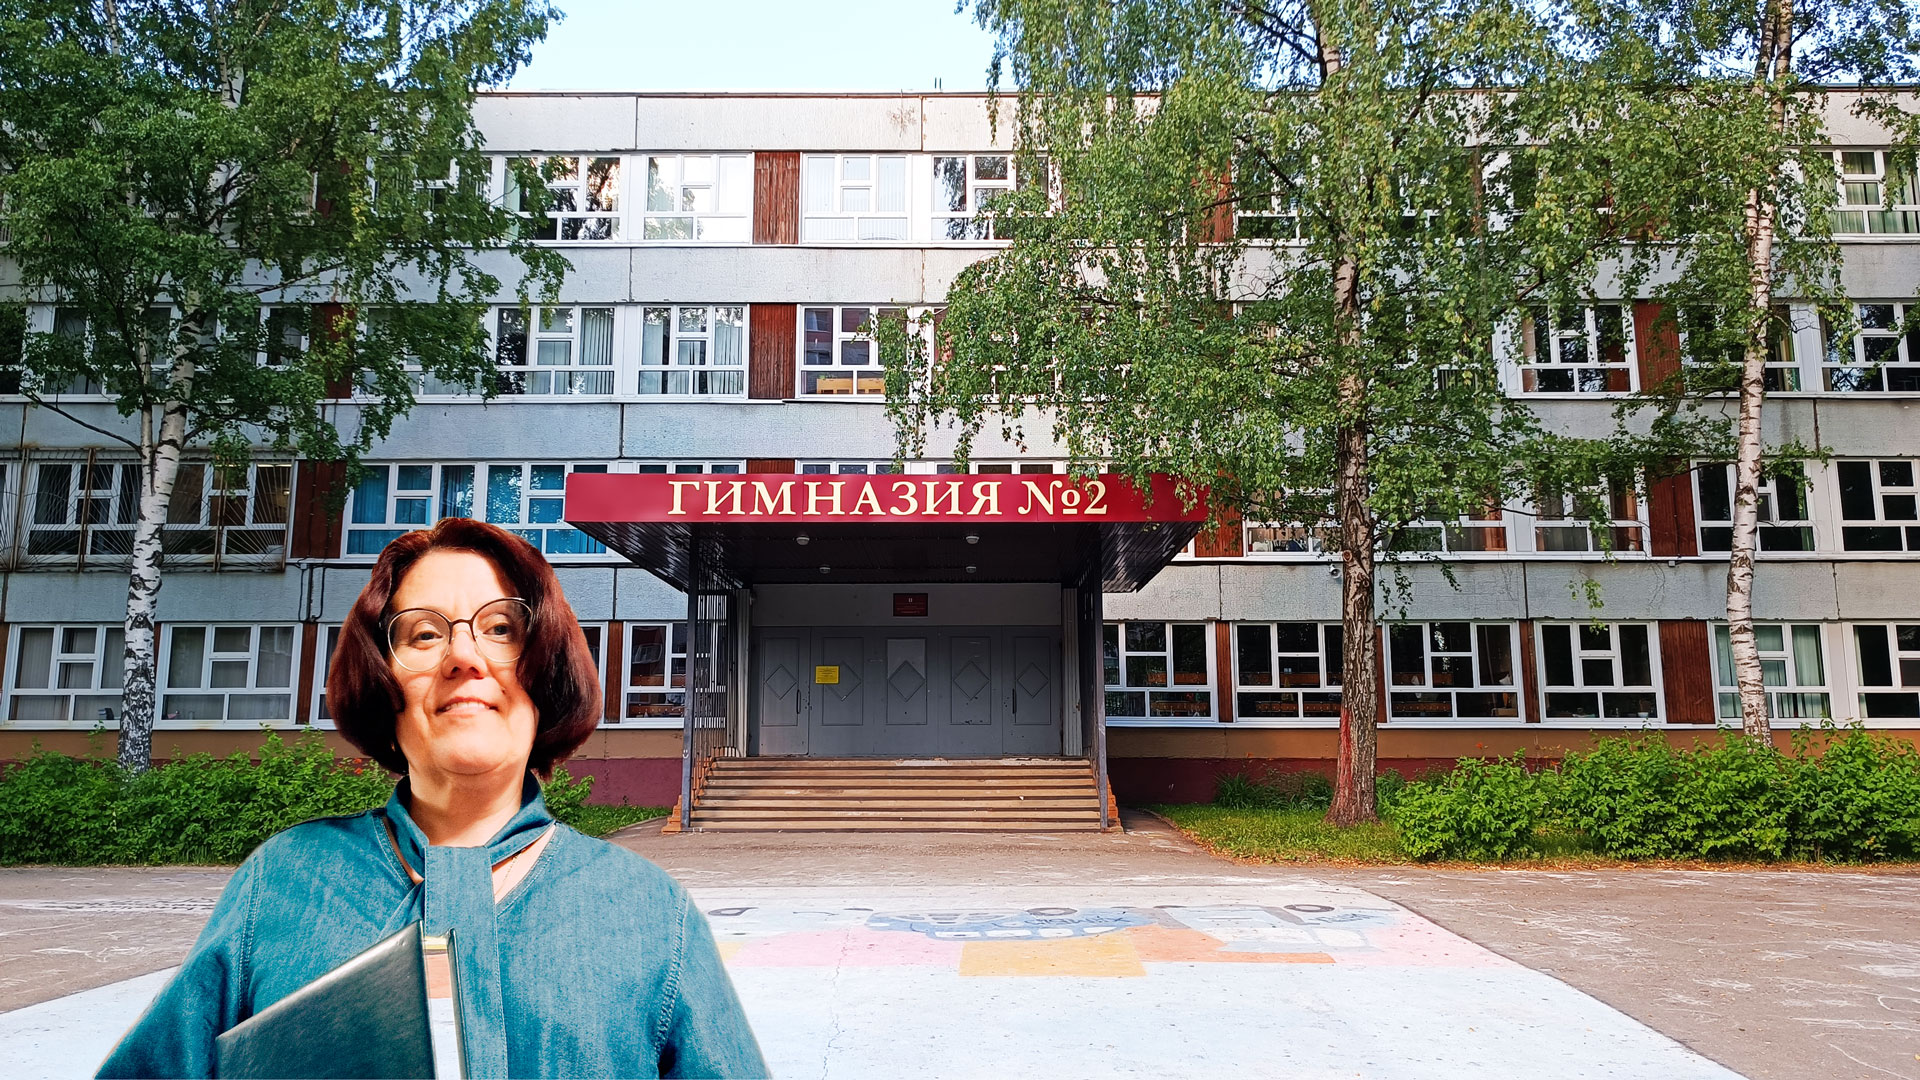 Гимназия 2 Ярославль: центральный вход в здание школьной организации.